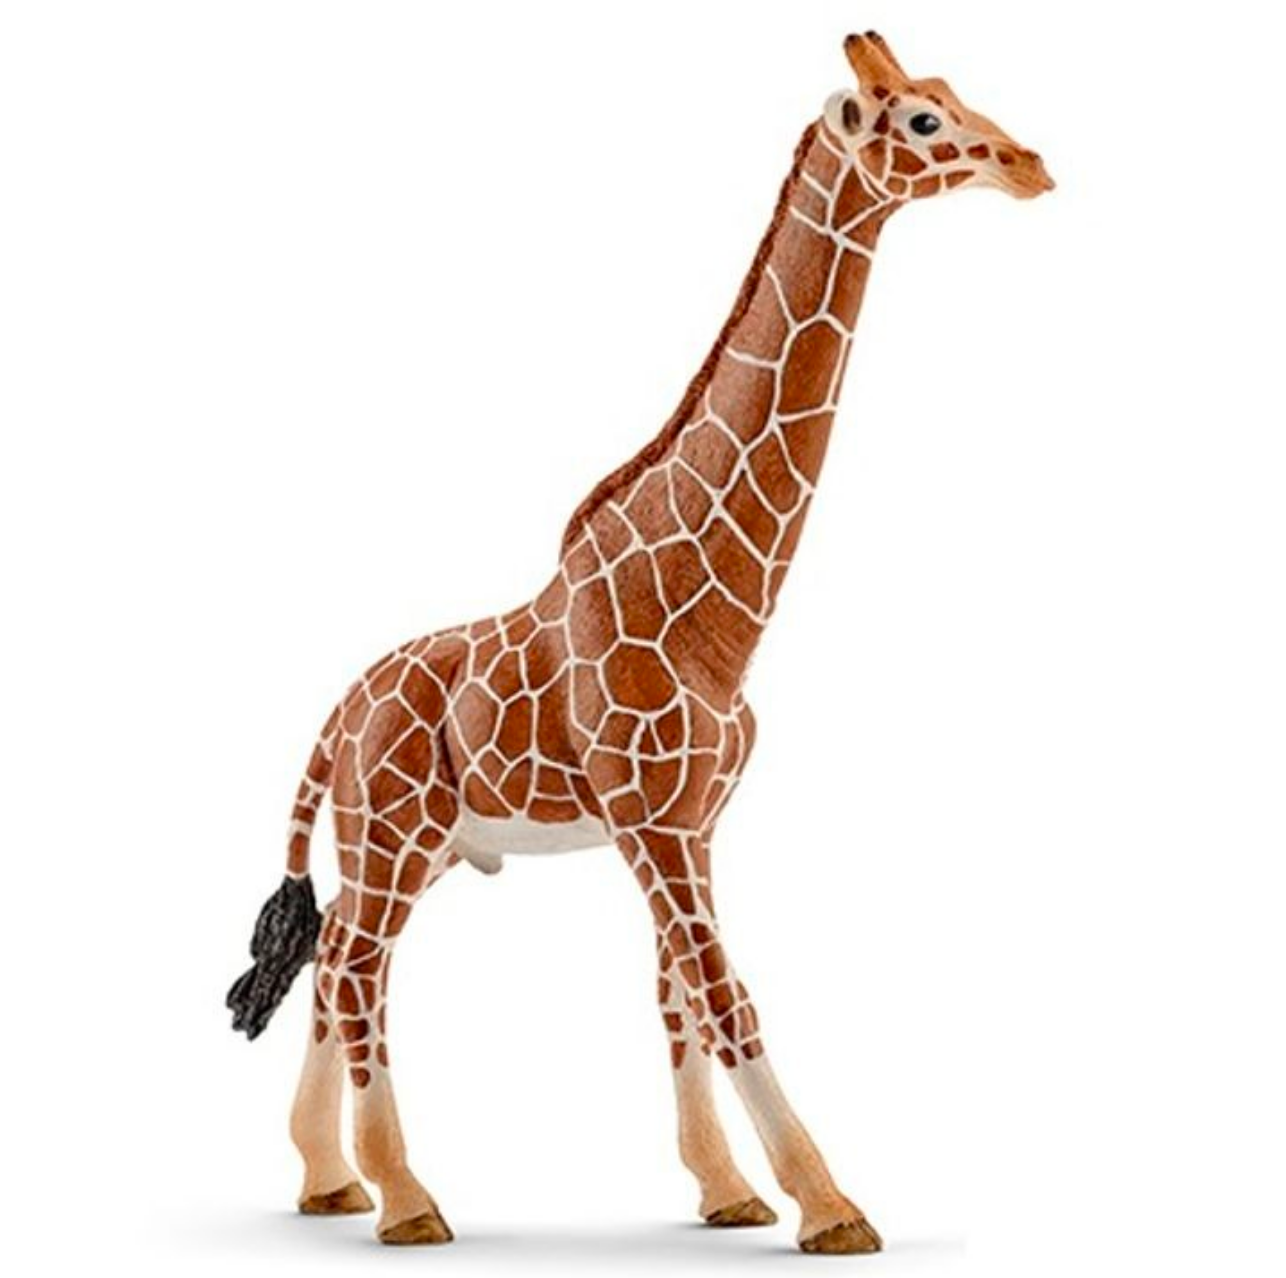 Giraffe Male by Schleich